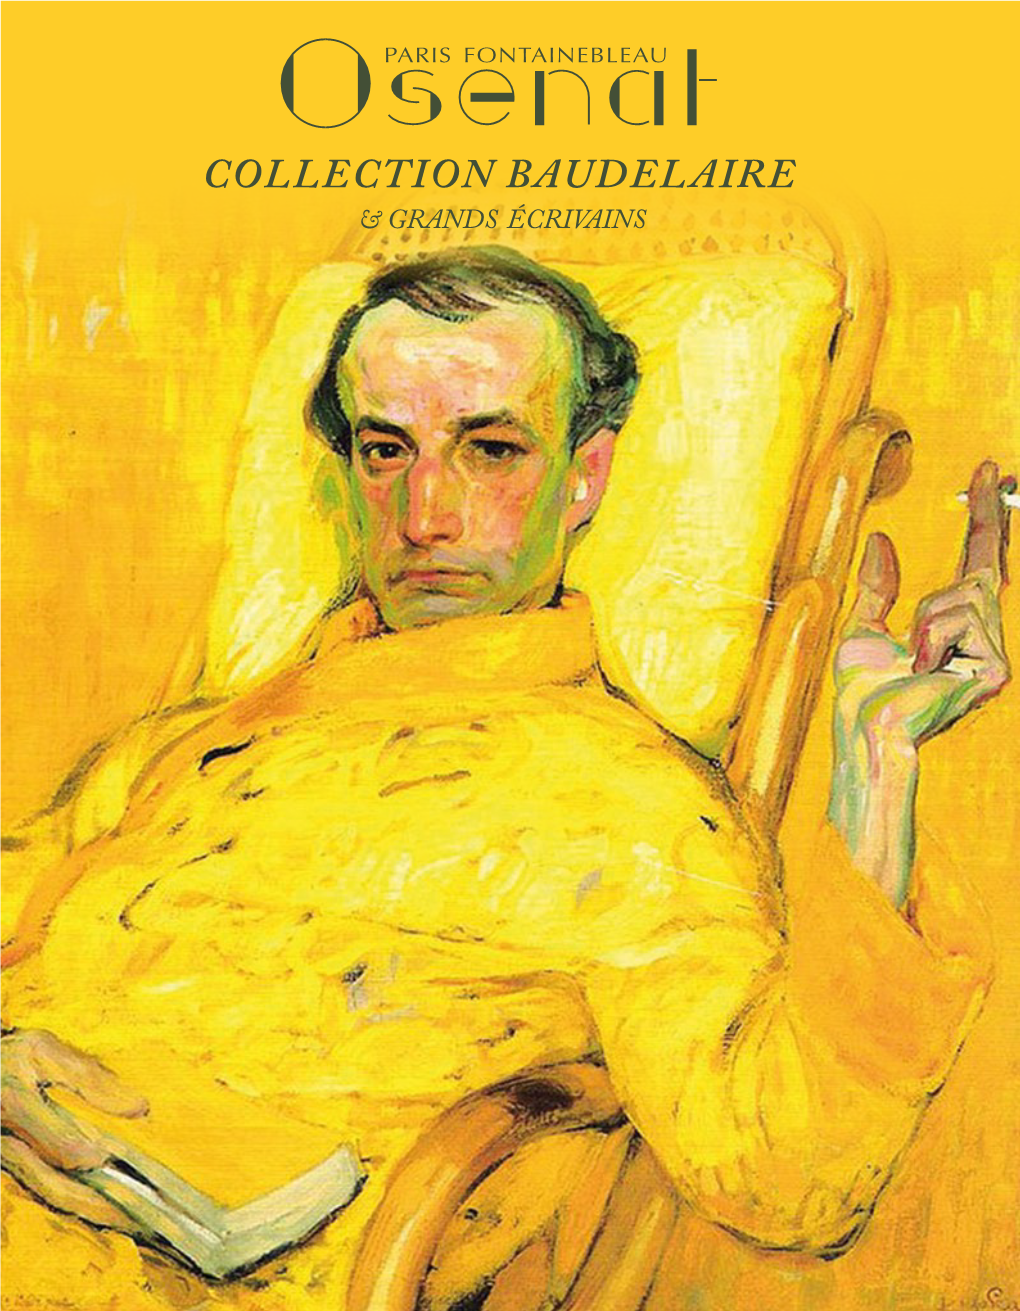 Collection Baudelaire & Grands Écrivains Collection &Baudelaire Grands Écrivains Dimanche 4 Novembre 2018 À 14H30